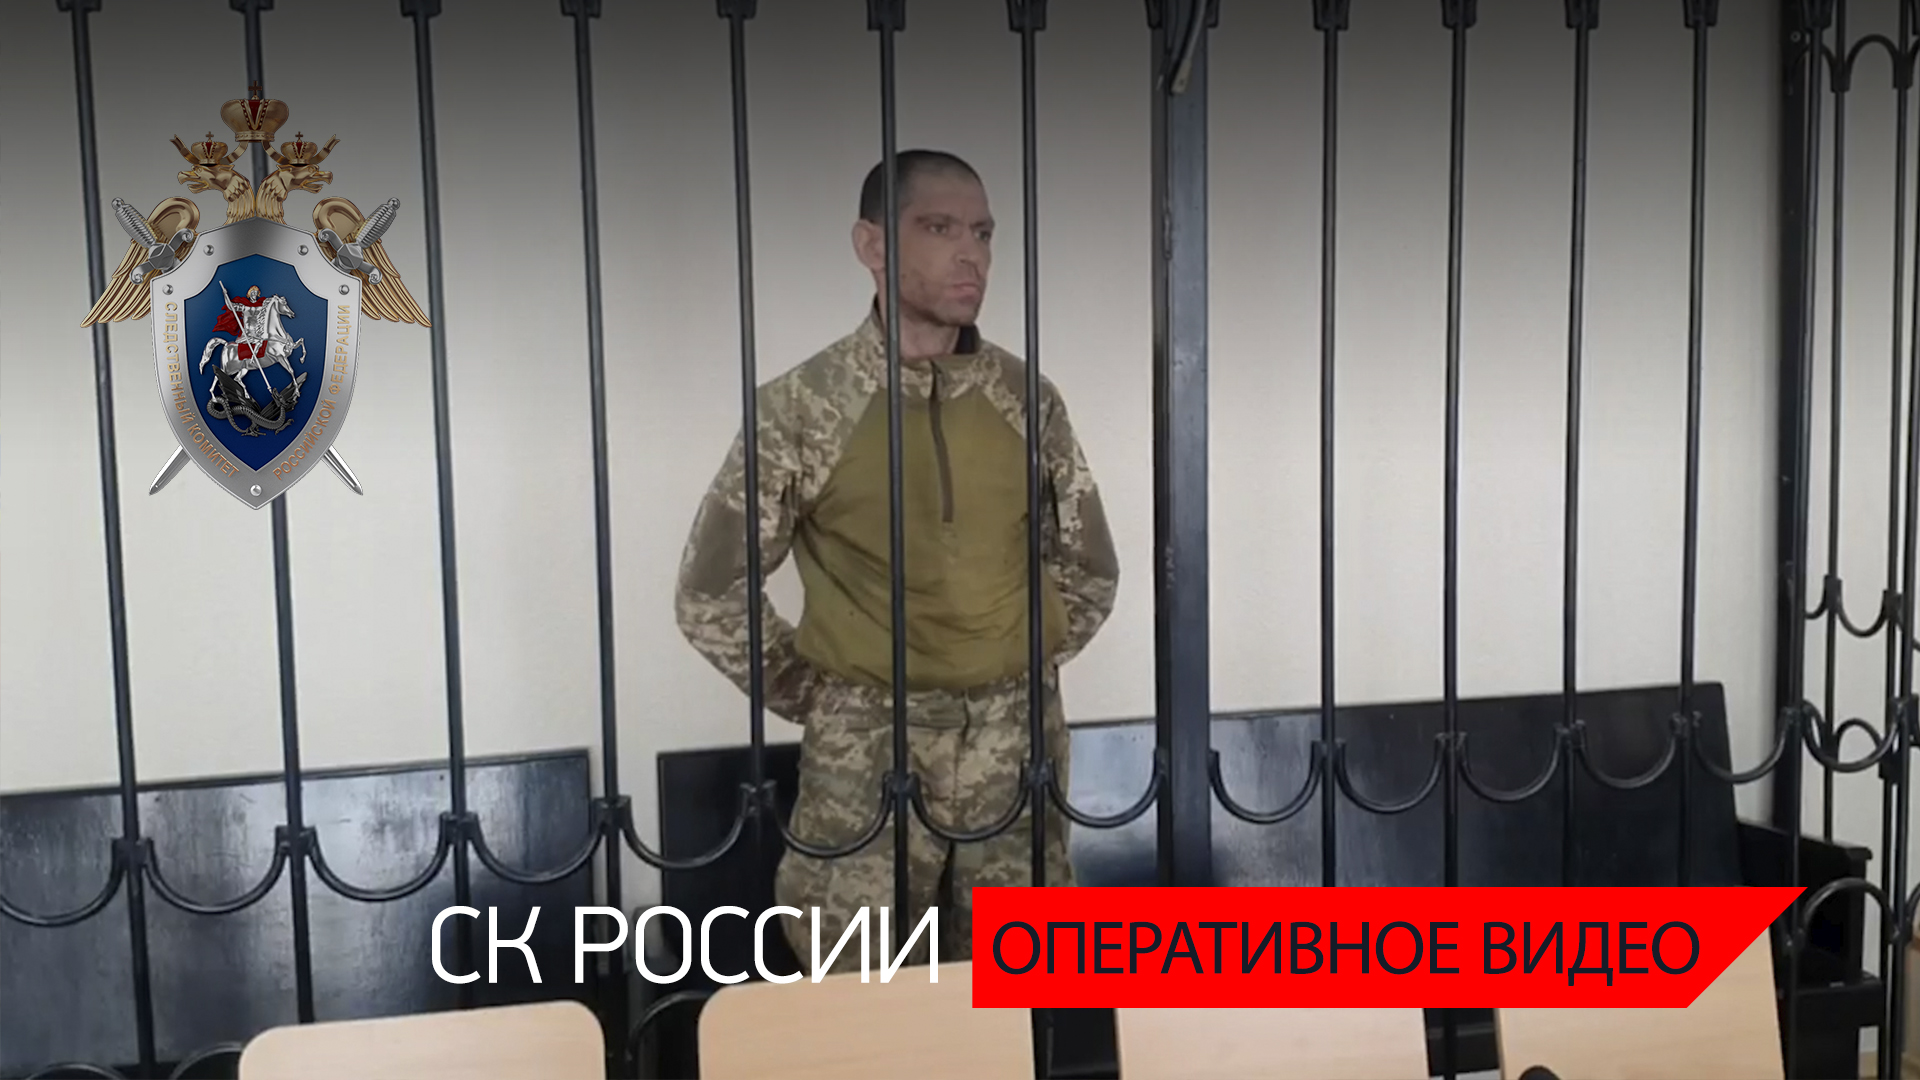 Вынесен приговор военнослужащему  Нацгвардии Украины  за обстрел автомобиля с мирными гражданами